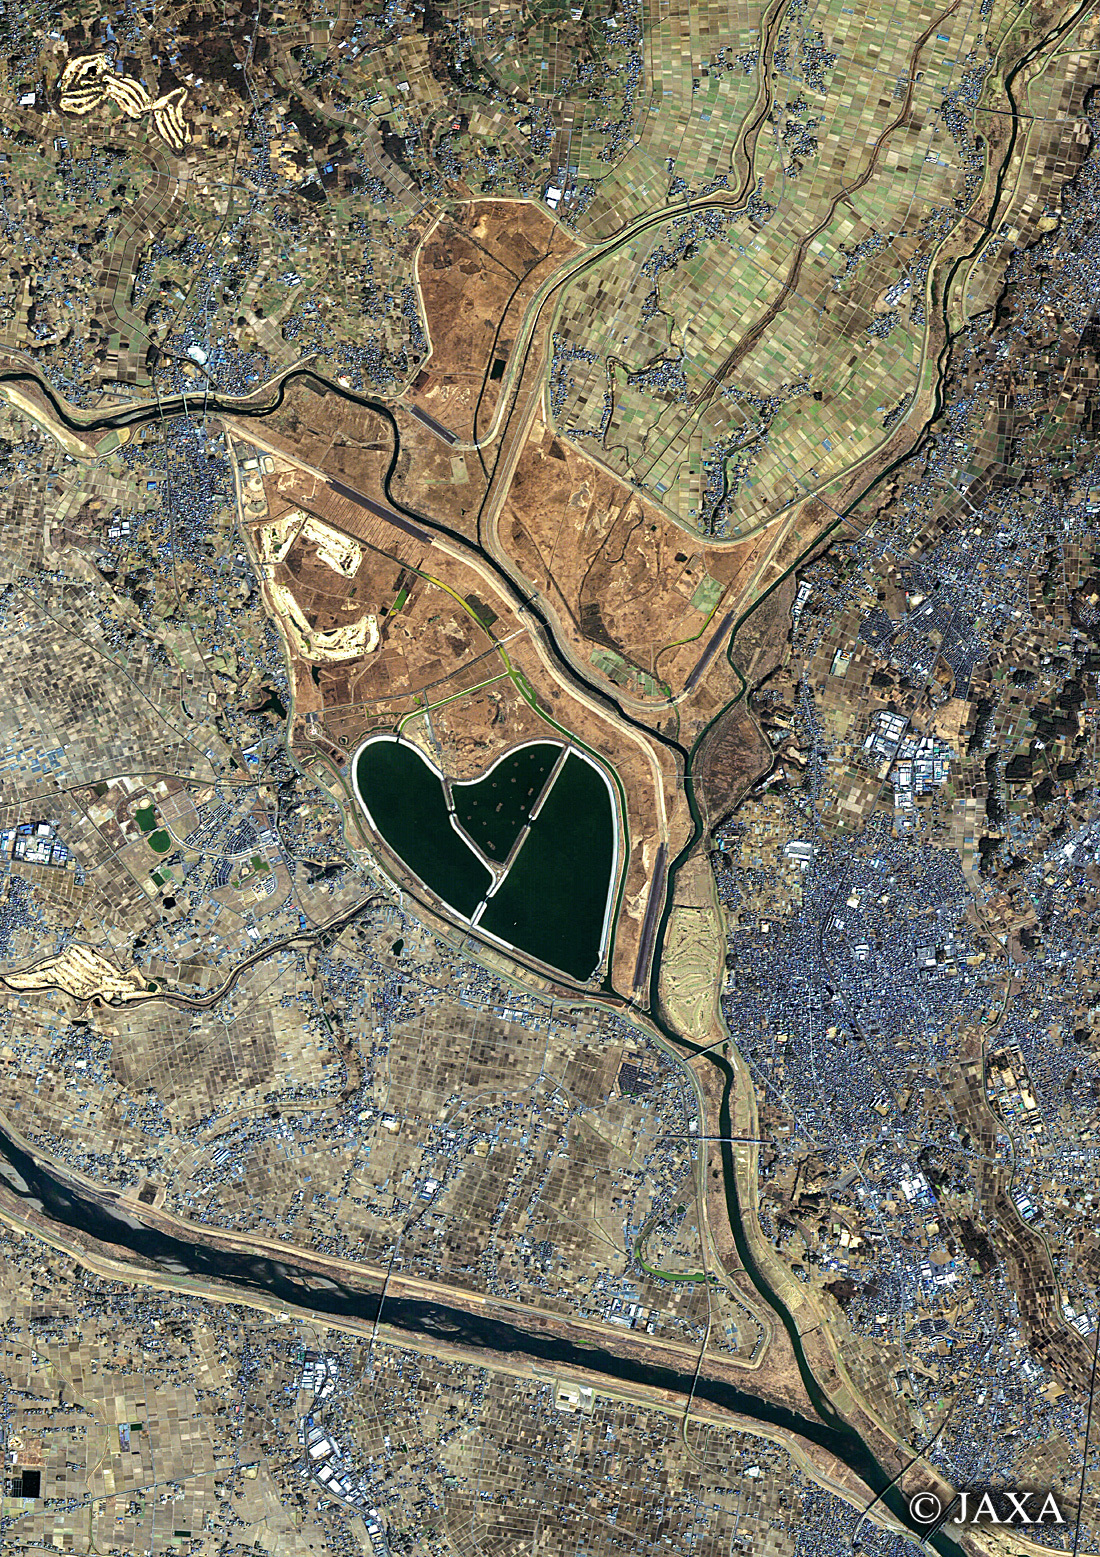 だいちから見た日本の都市 渡良瀬遊水地周辺:衛星画像